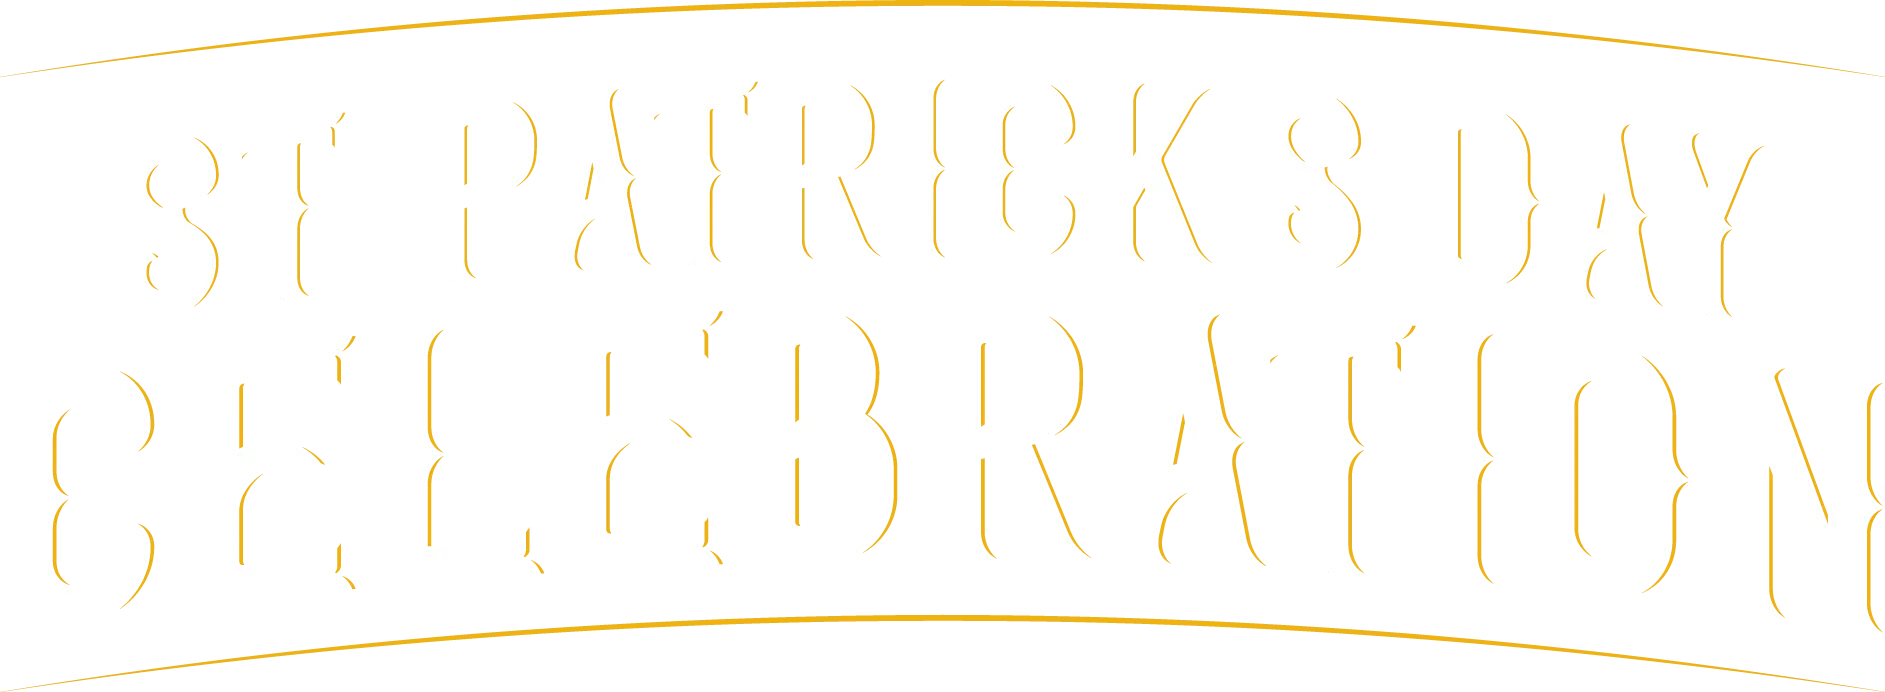 St. Patrick's Day Celebration typography